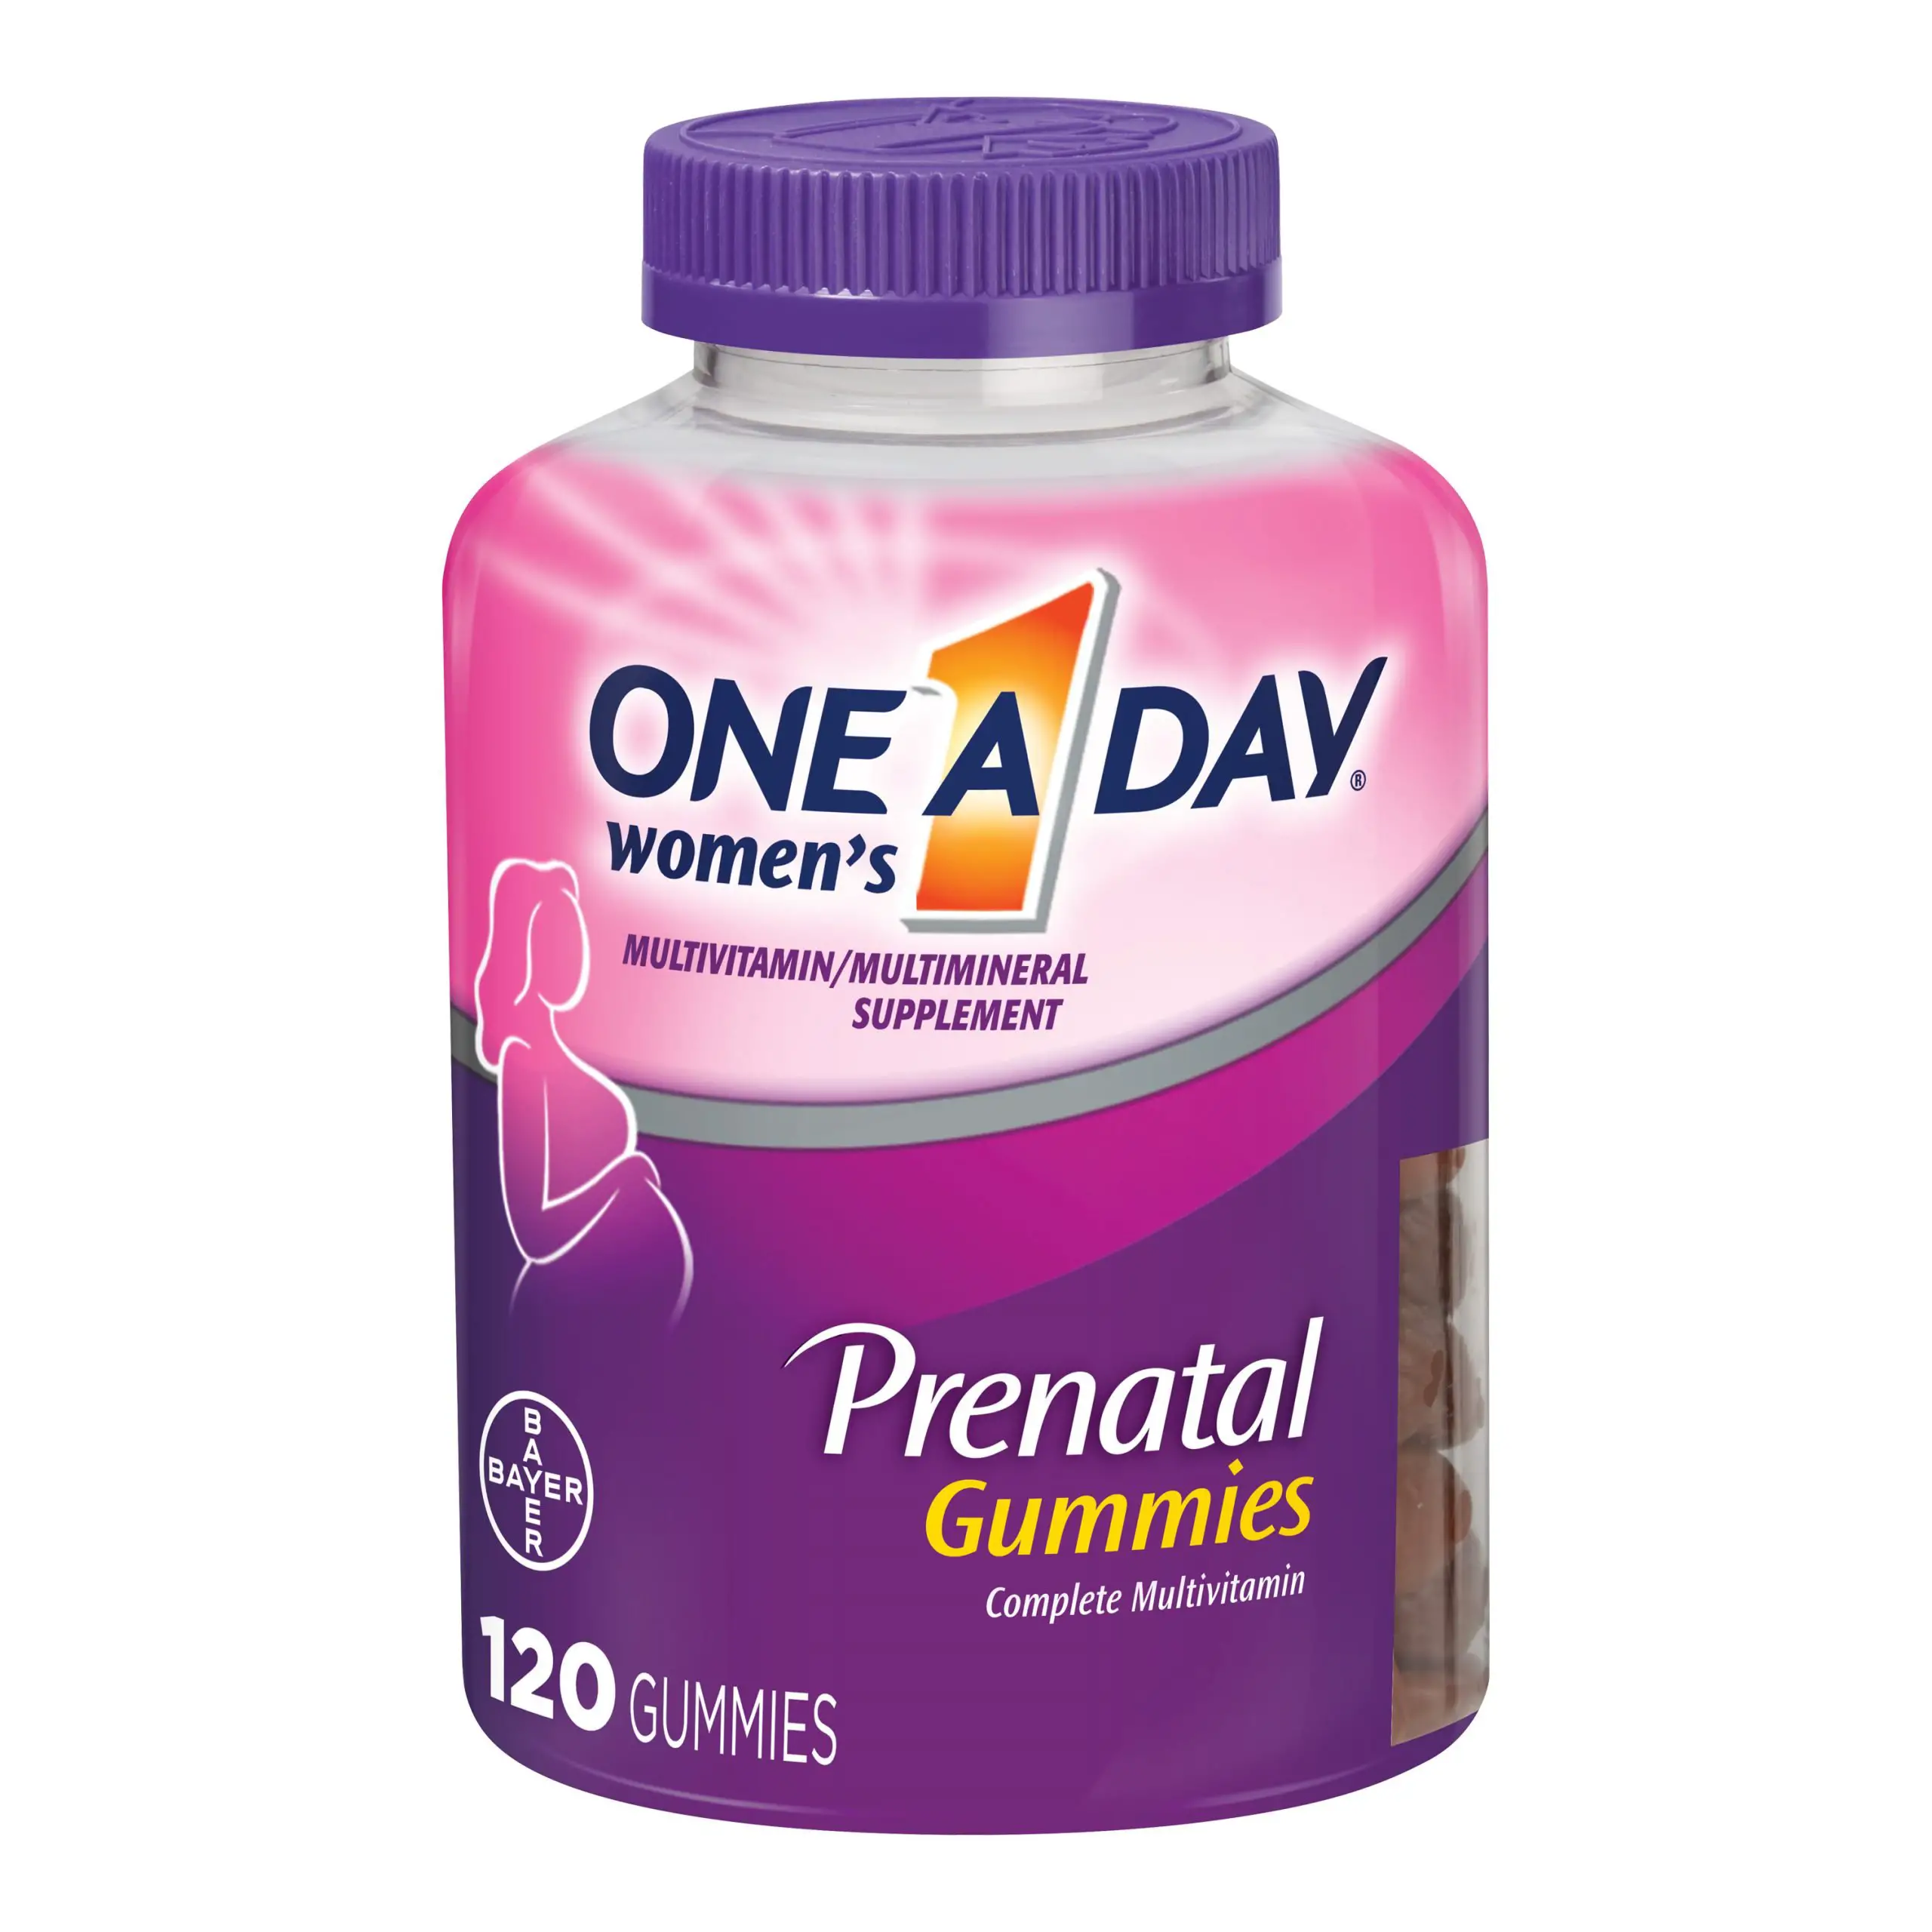 One A Day Prenatal Multivitamin Prenatal Gummy Vitamins, 120 Count ...